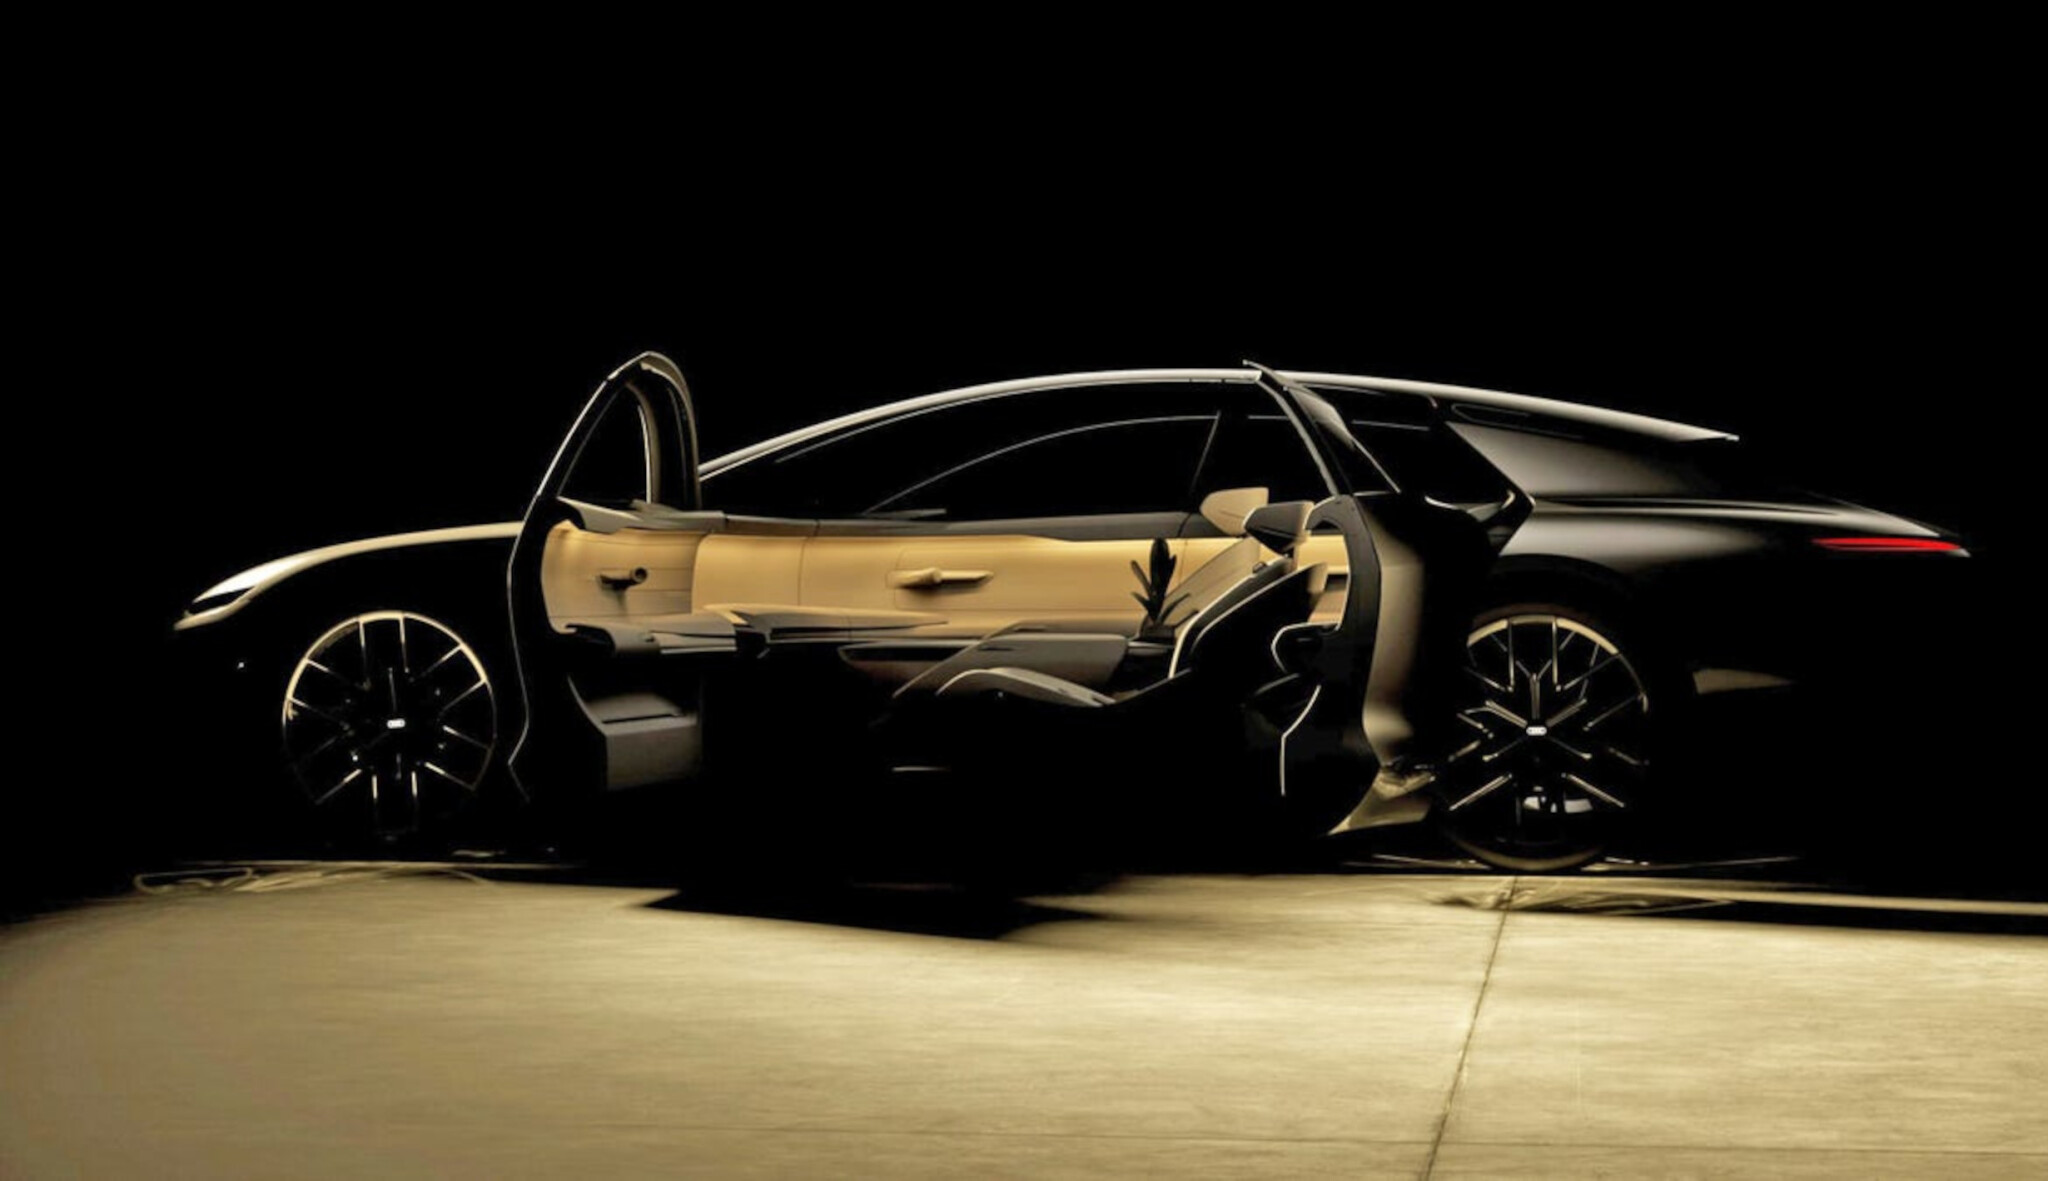 Budoucnost aut podle Audi. Místo kabiny pro řidiče koule k životu